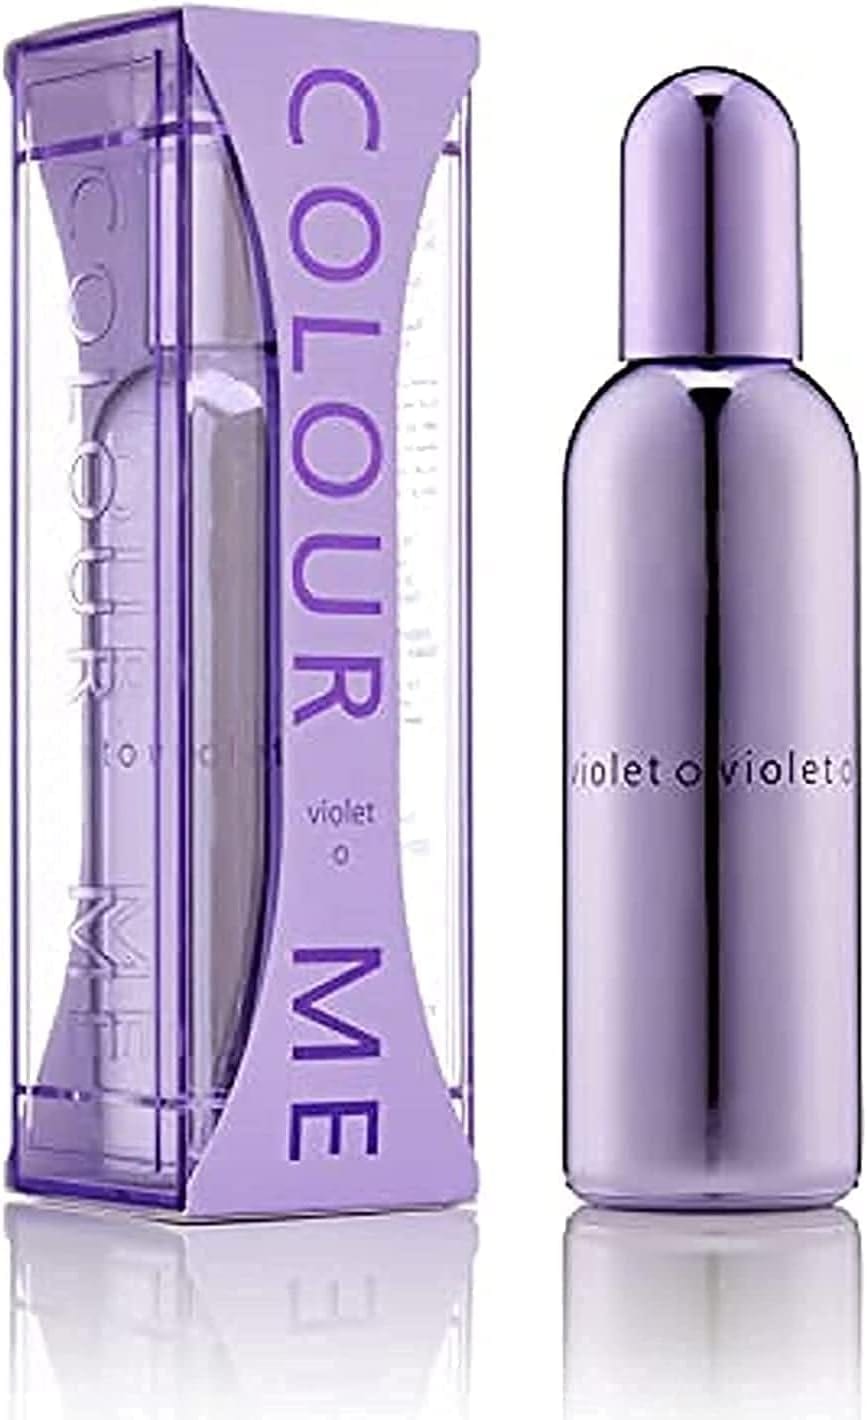 Colour Me Femme Violet 100Ml Edp